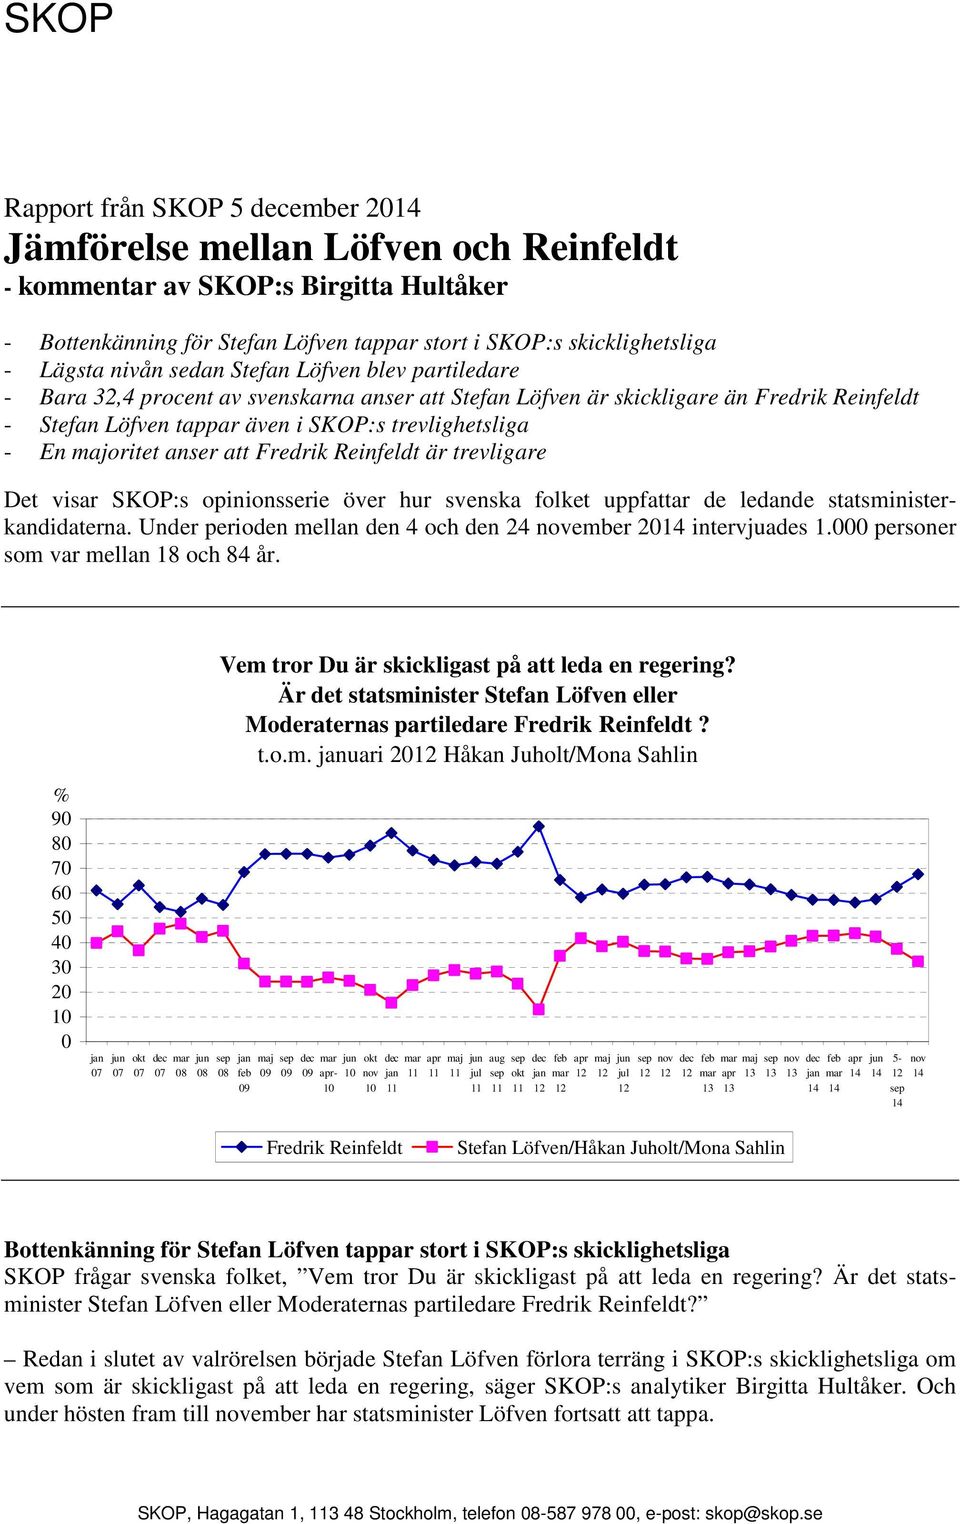 Det visar SKOP:s opinionsserie över hur svenska folket uppfattar de ledande statsministerkandidaterna. Under perioden mellan den 4 och den 24 november intervjuades 1.